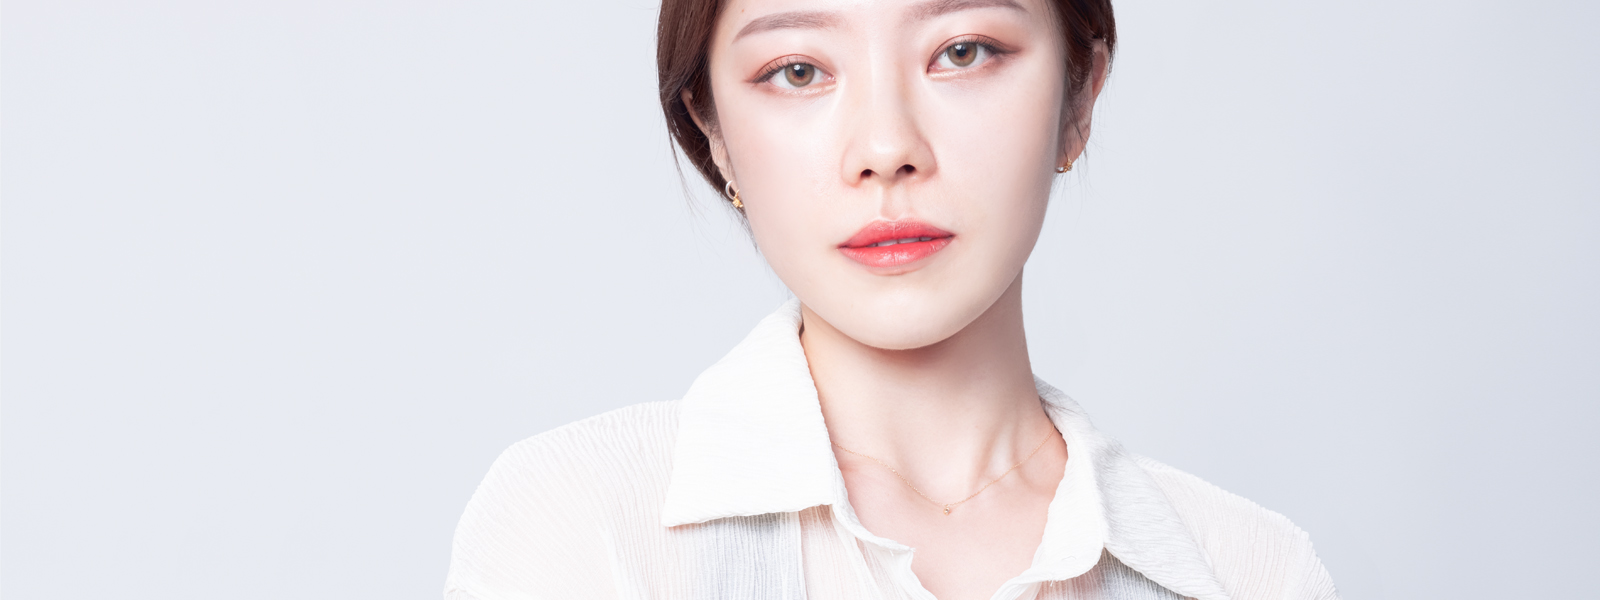 2021韓系妝容、打造自然透明感證件照妝容教學